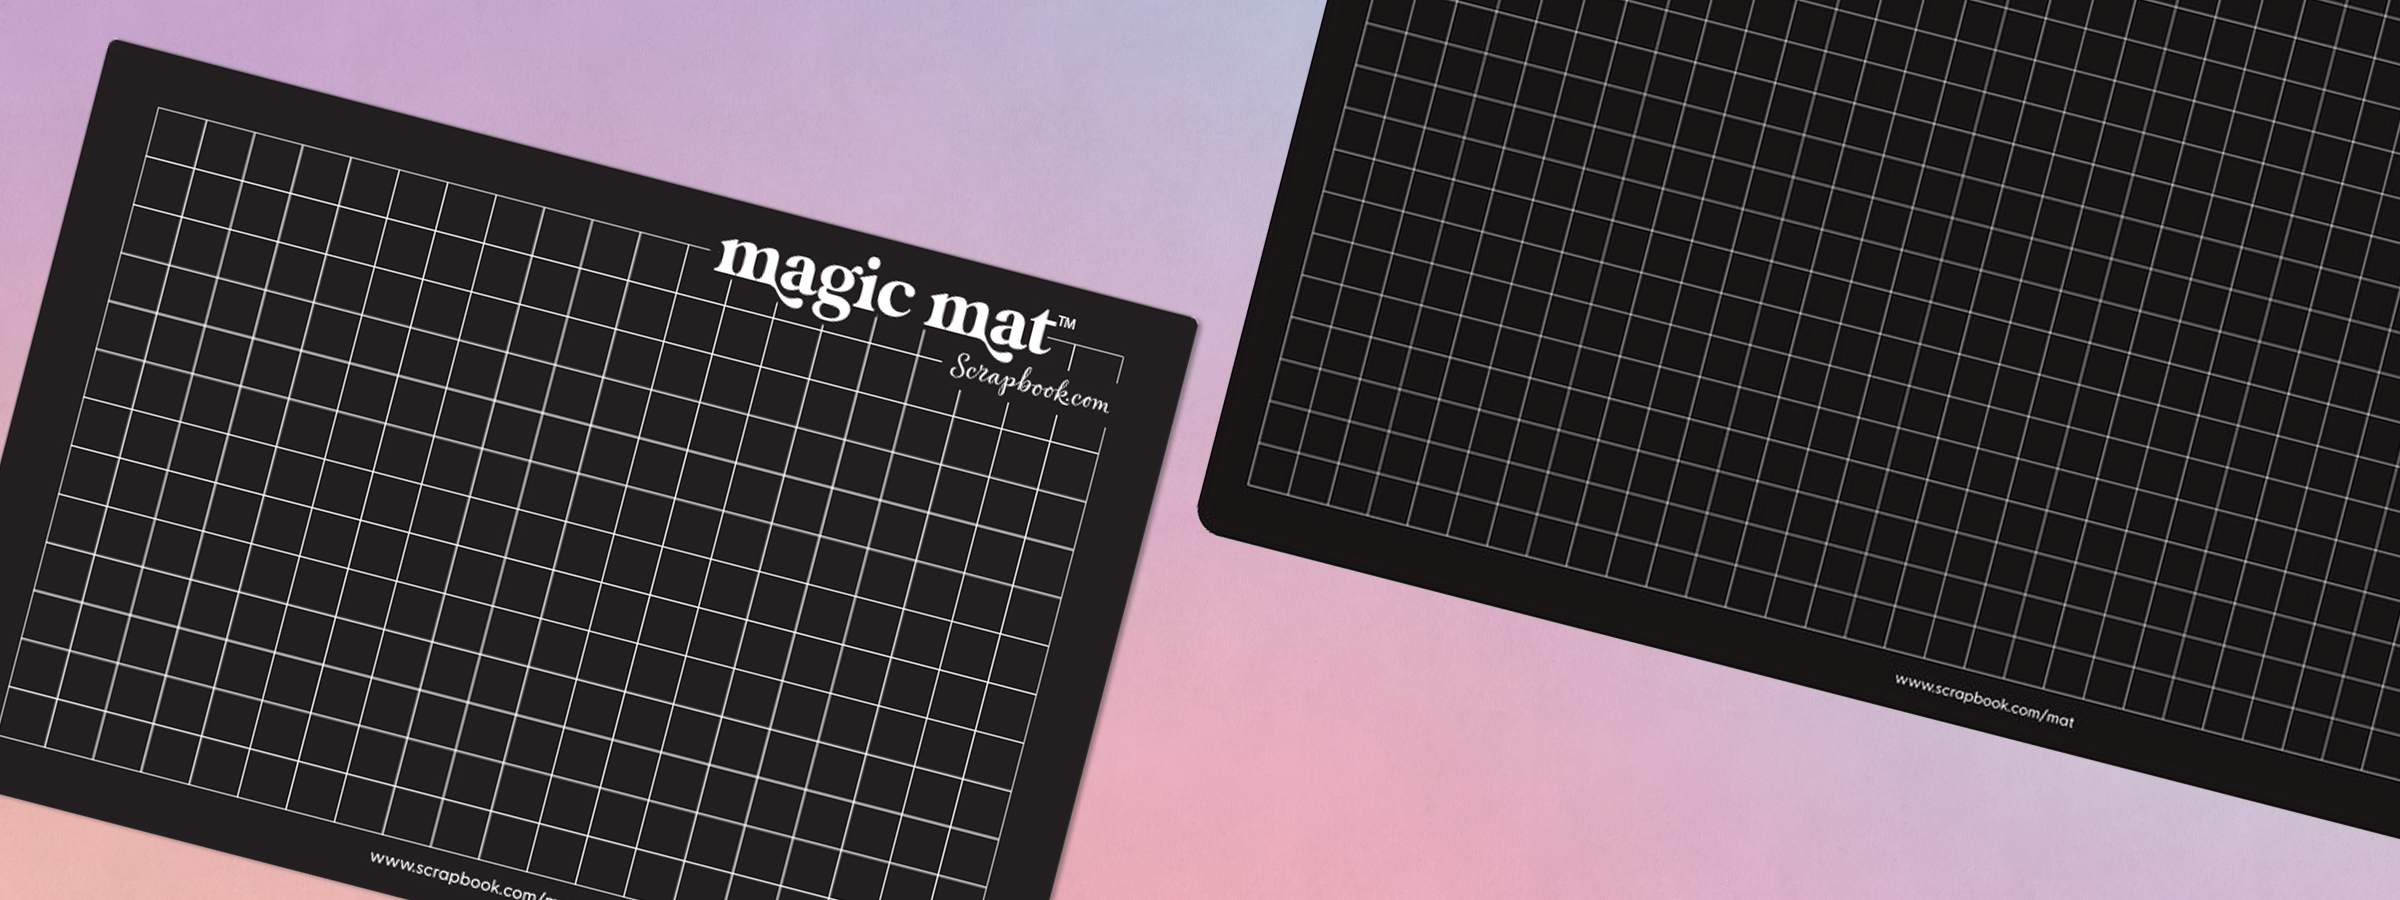 The Magical Mat